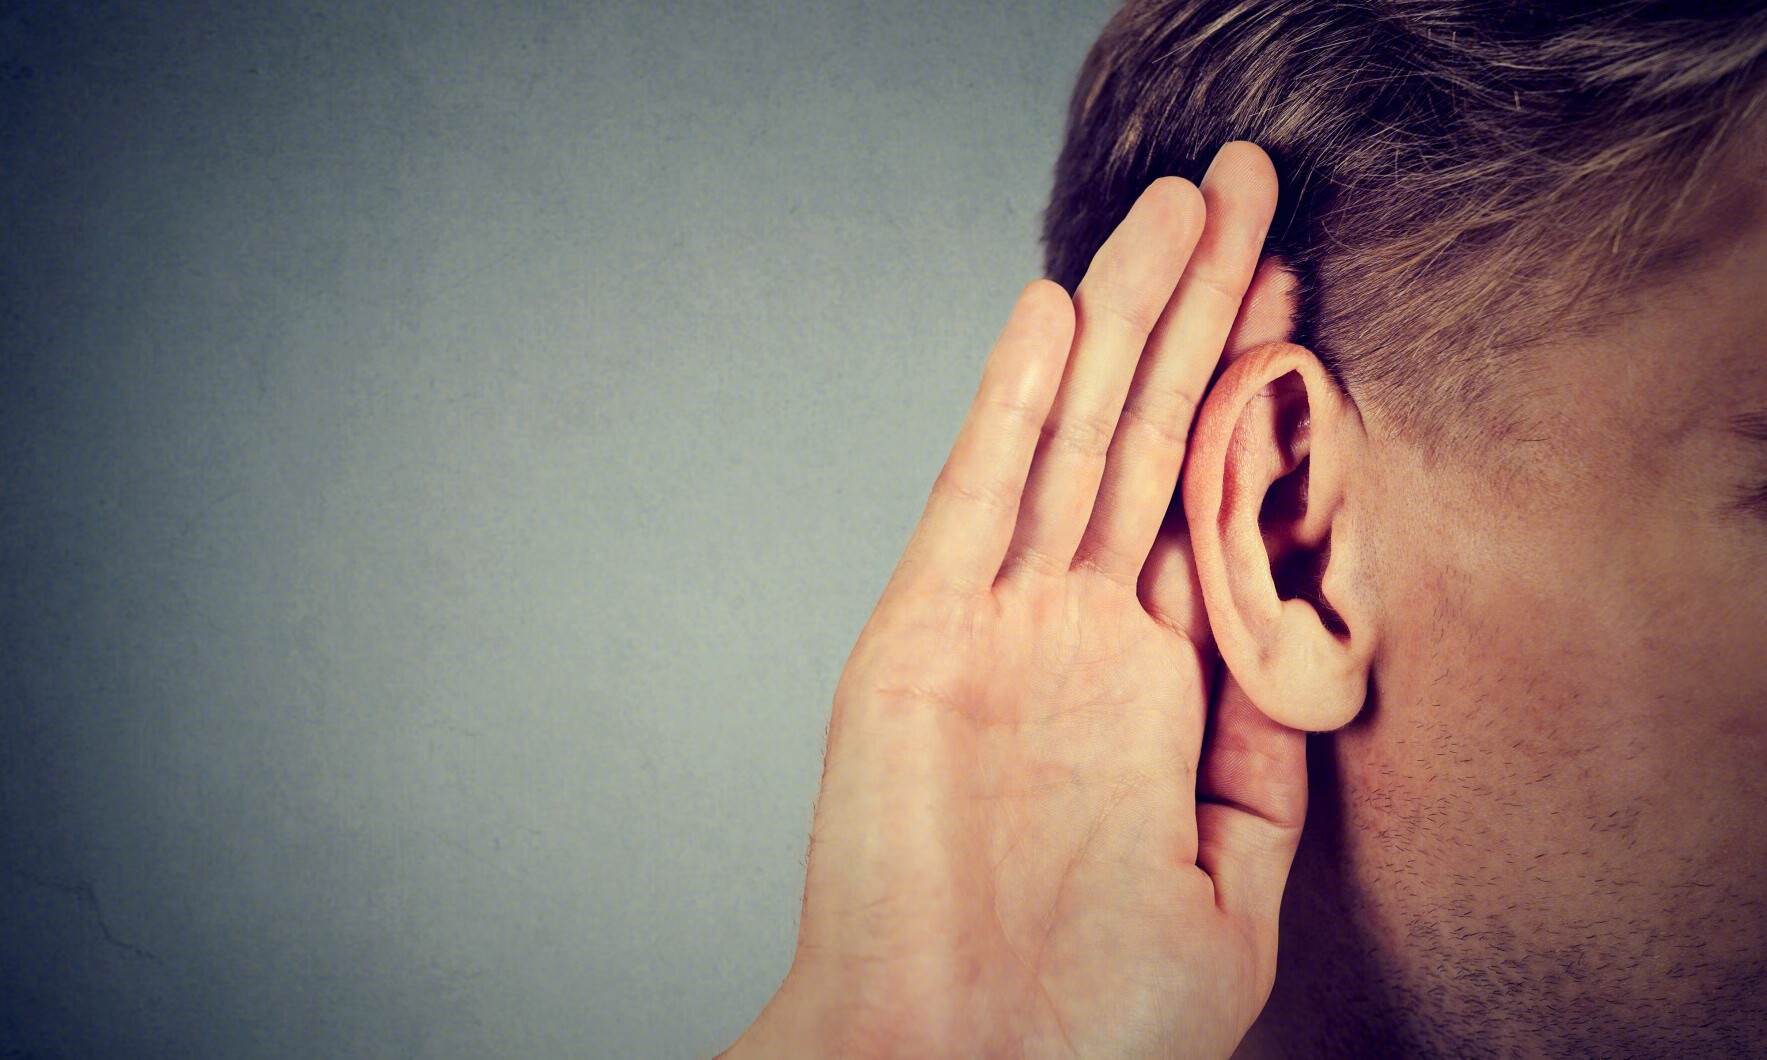 耳朵下方“鼓包” 竟是腮腺肿瘤惹的祸